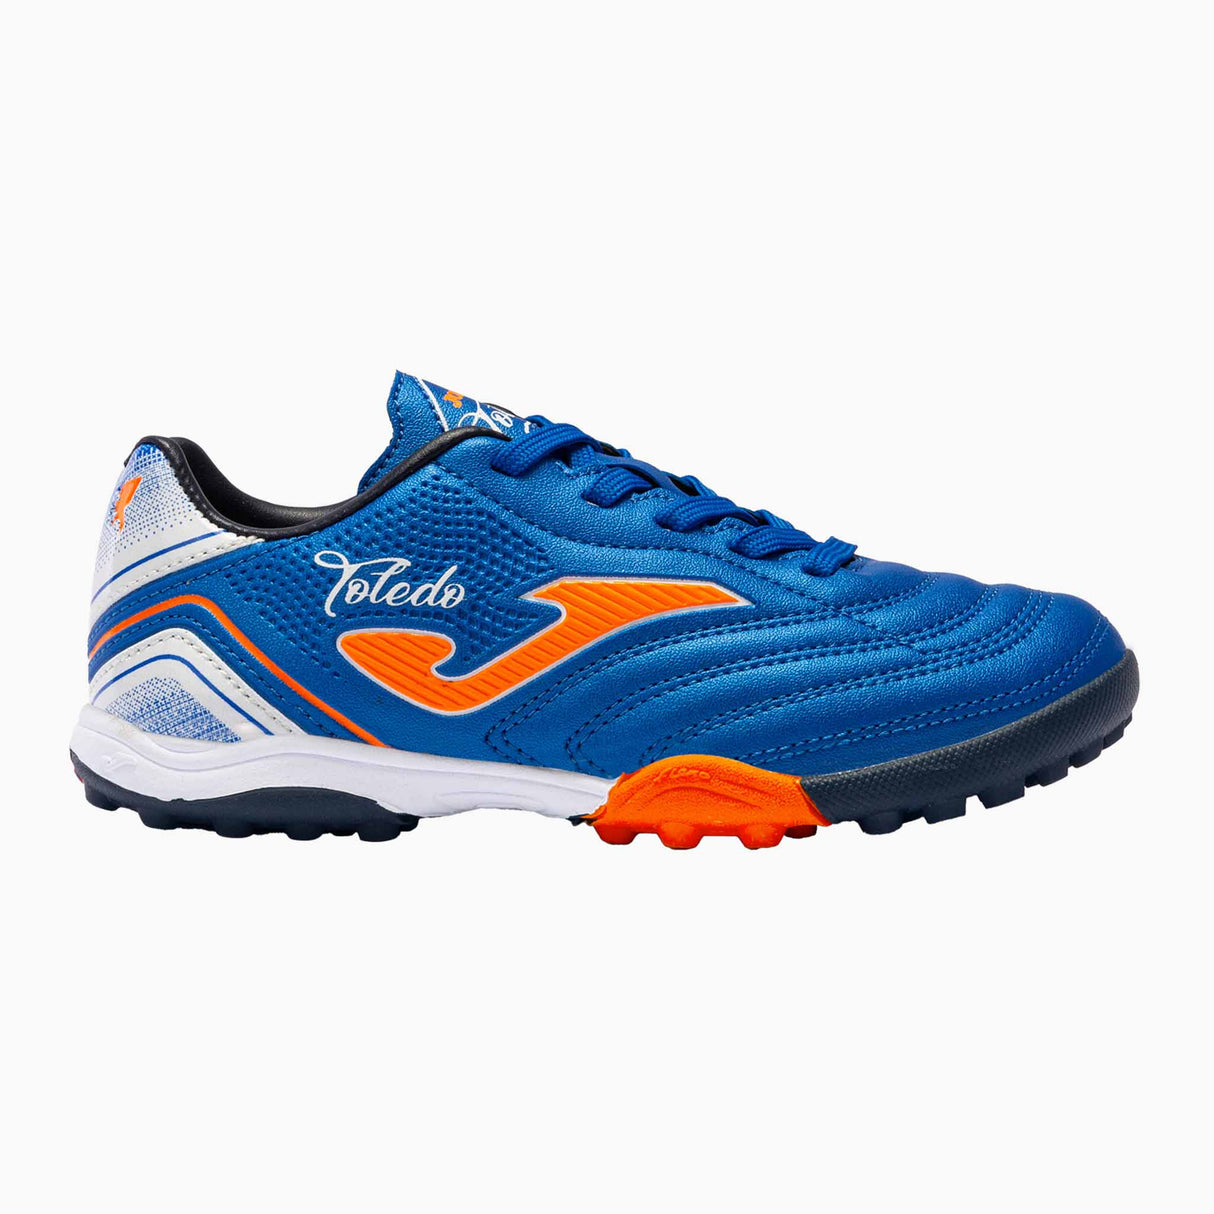 Joma Toledo JR 2204 Turf chaussures de soccer pour gazone artificiel junior - Bleu Royal / Orange